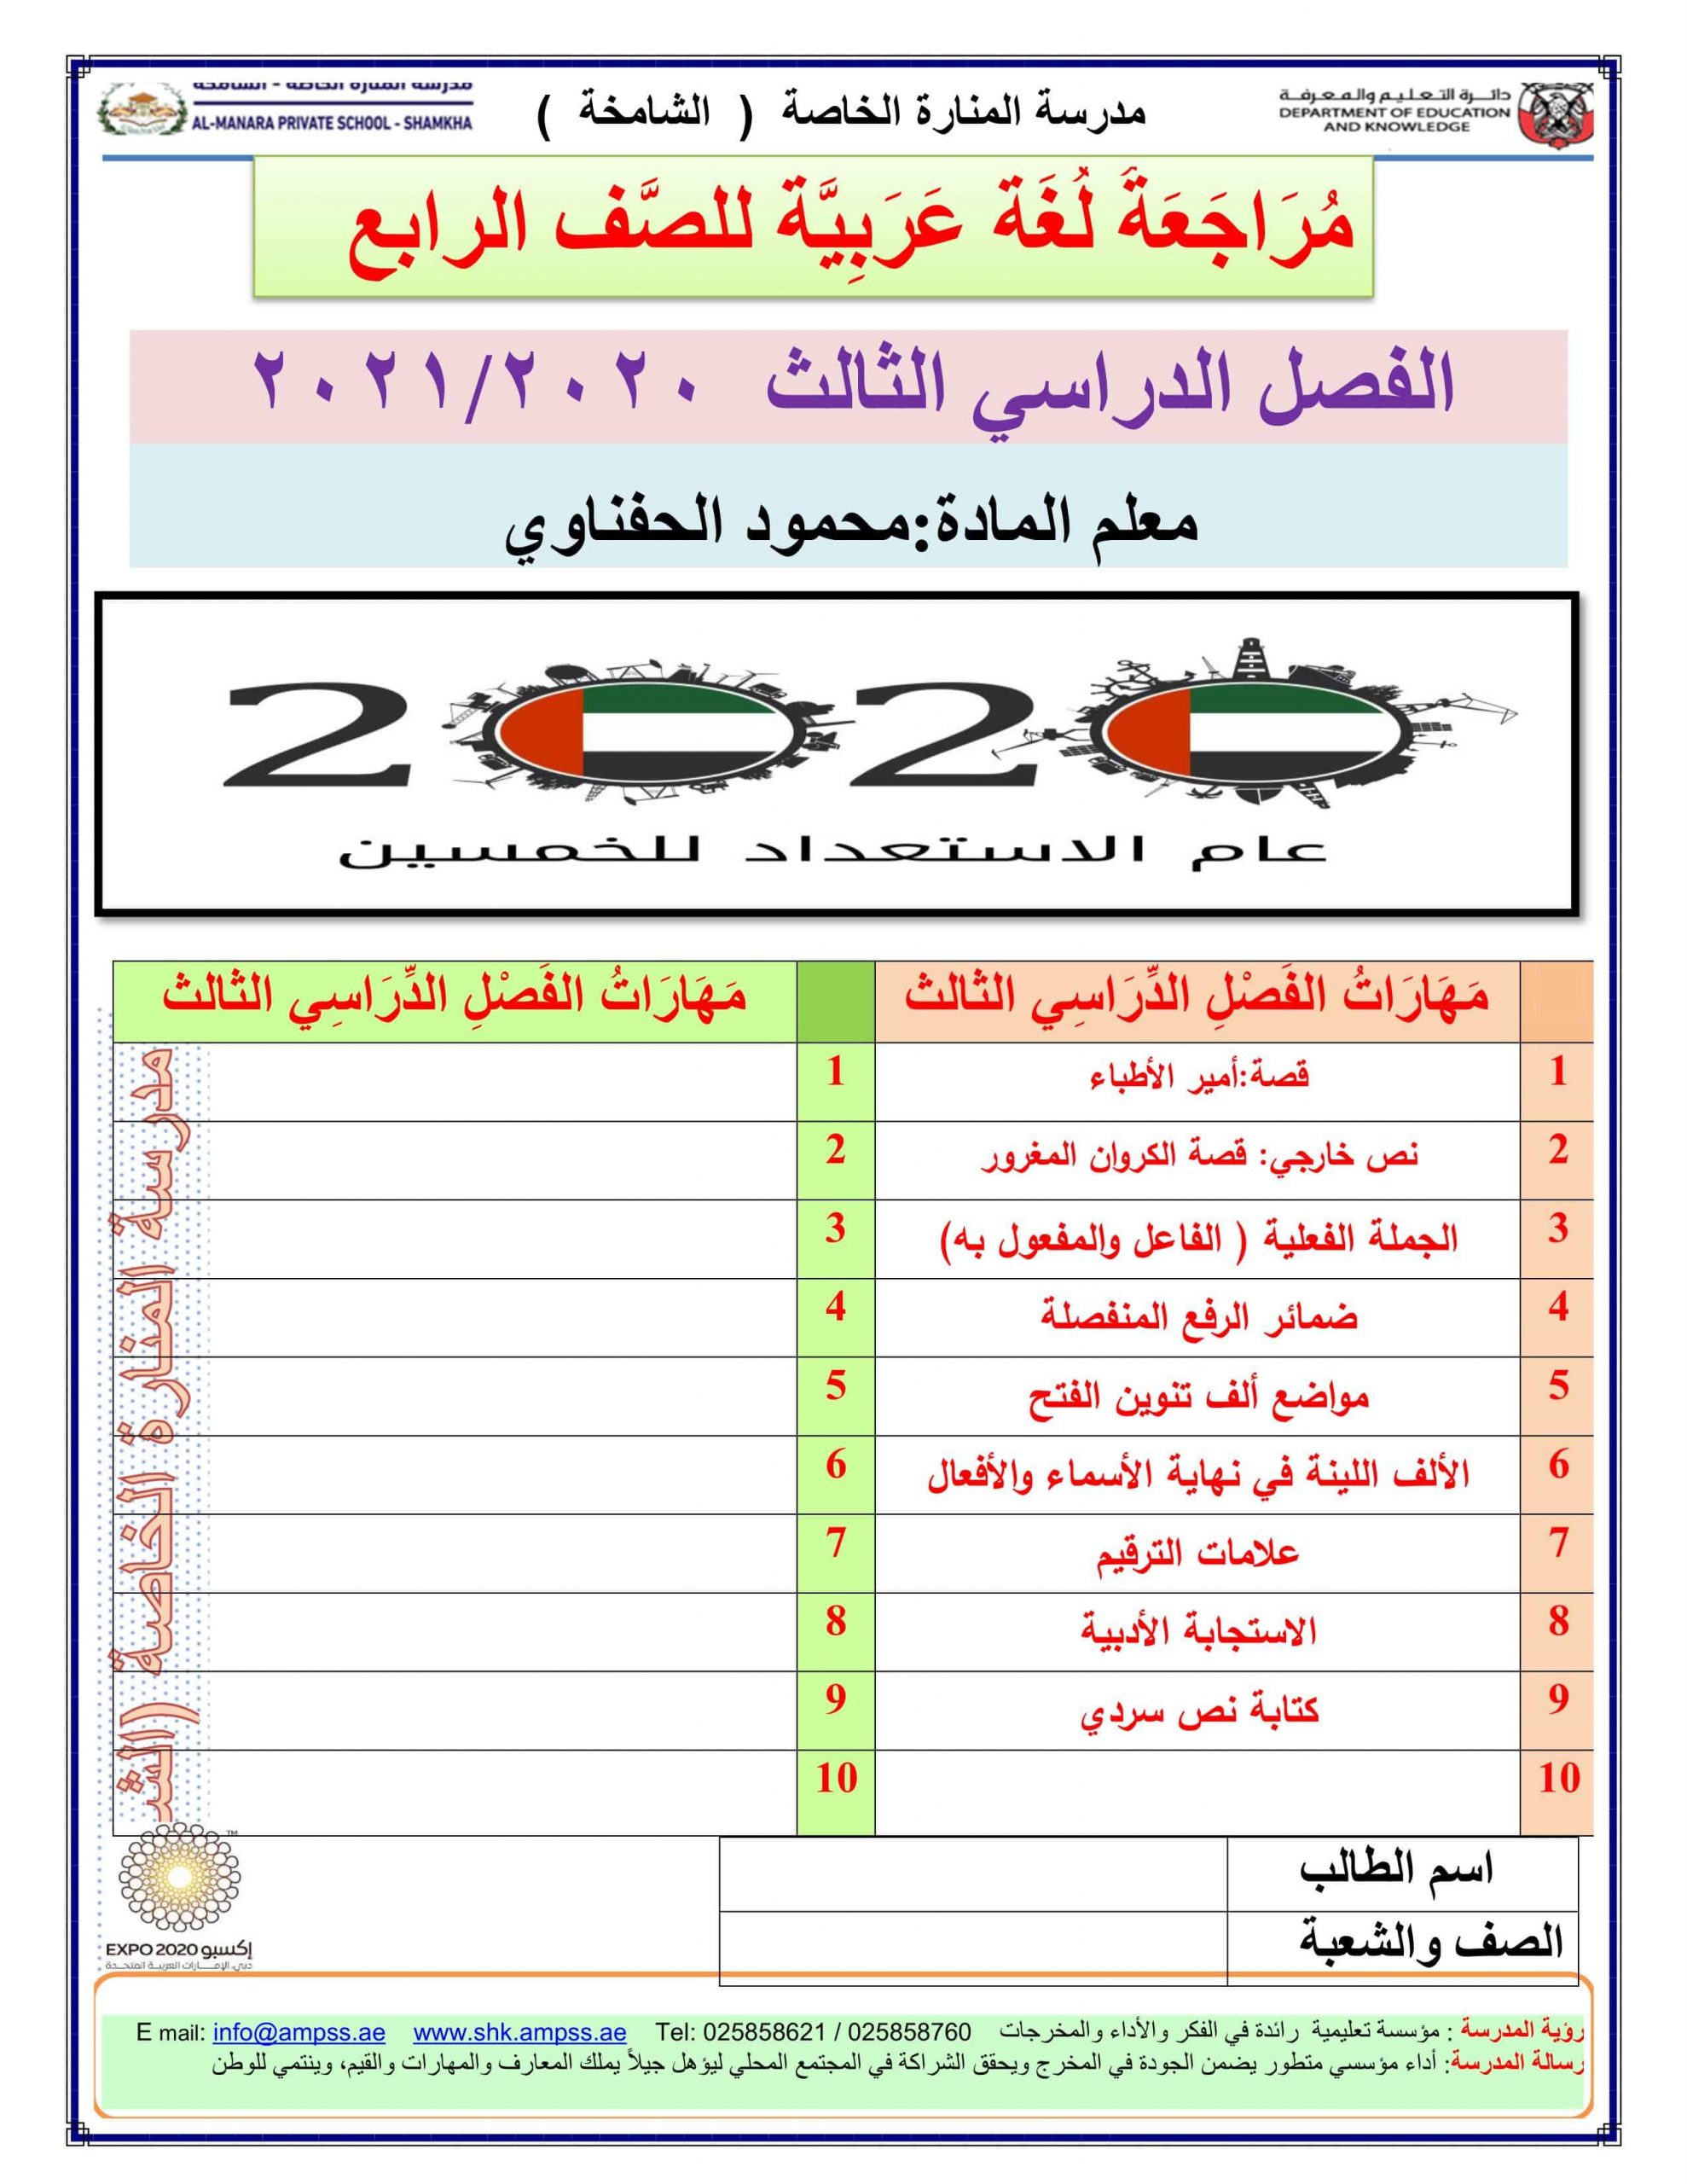 أوراق عمل مراجعة شاملة الفصل الدراسي الثالث الصف الرابع مادة اللغة العربية